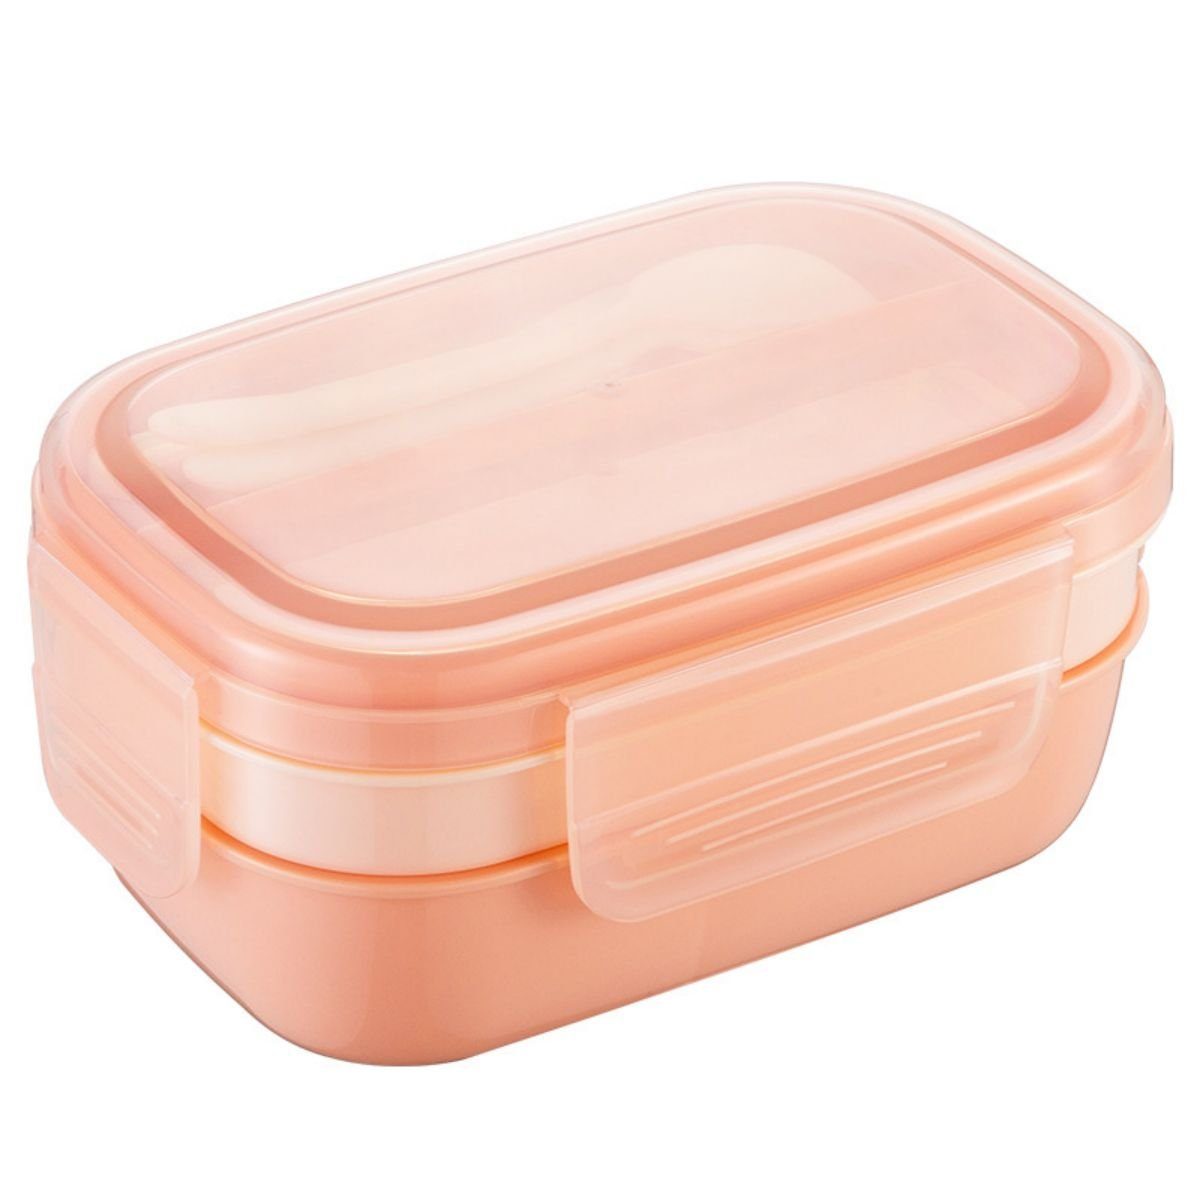 DOPWii Frischhaltedose Auslaufsichere, mehrschichtige Lunchbox, 1900 ml, für Picknicks und Familienaktivitäten, mikrowellengeeignet